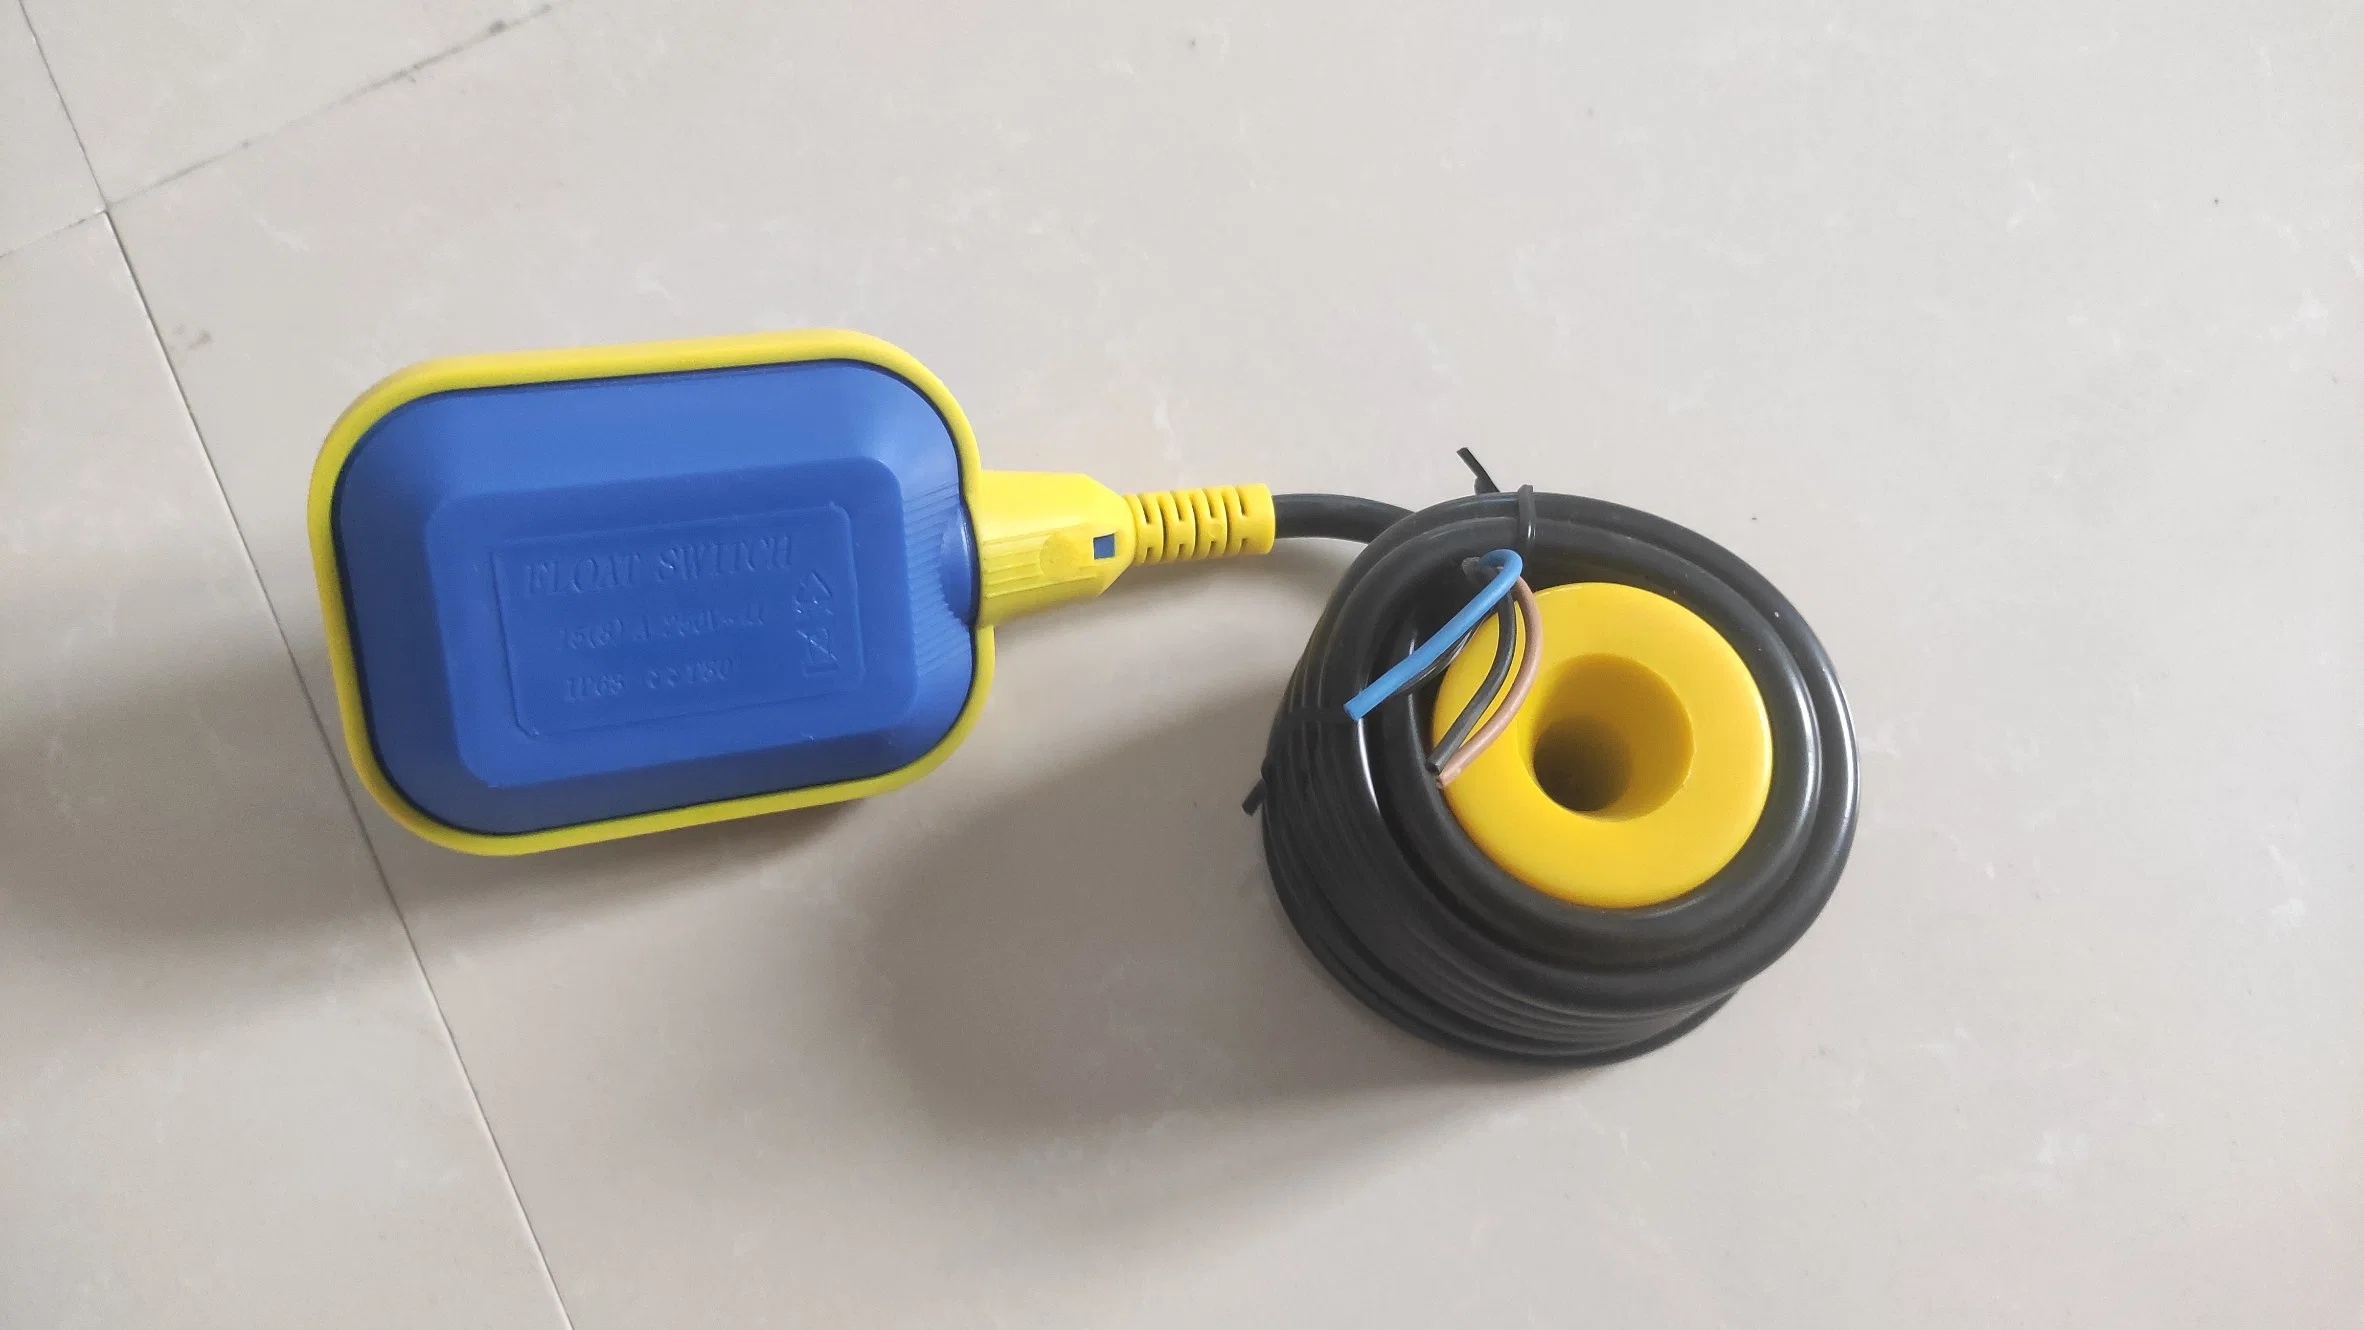 Interruptor de flotador para el nivel de líquido de flotación de bola de cable de la bomba de sumidero Interruptor